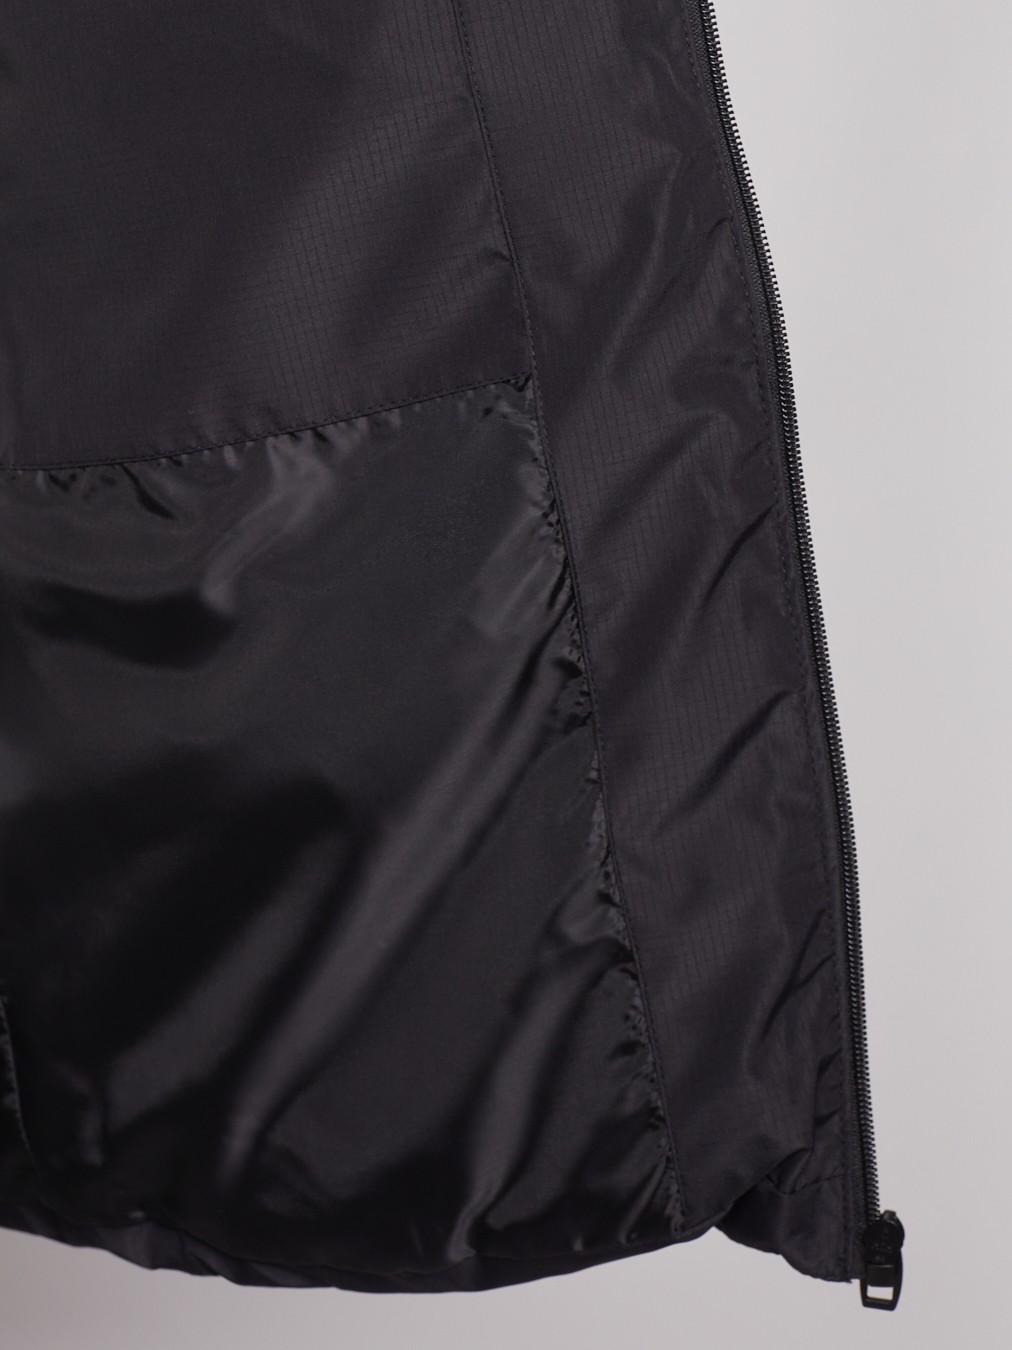 Тёплая куртка с воротником-стойкой zolla 012345102184, цвет черный, размер S - фото 3